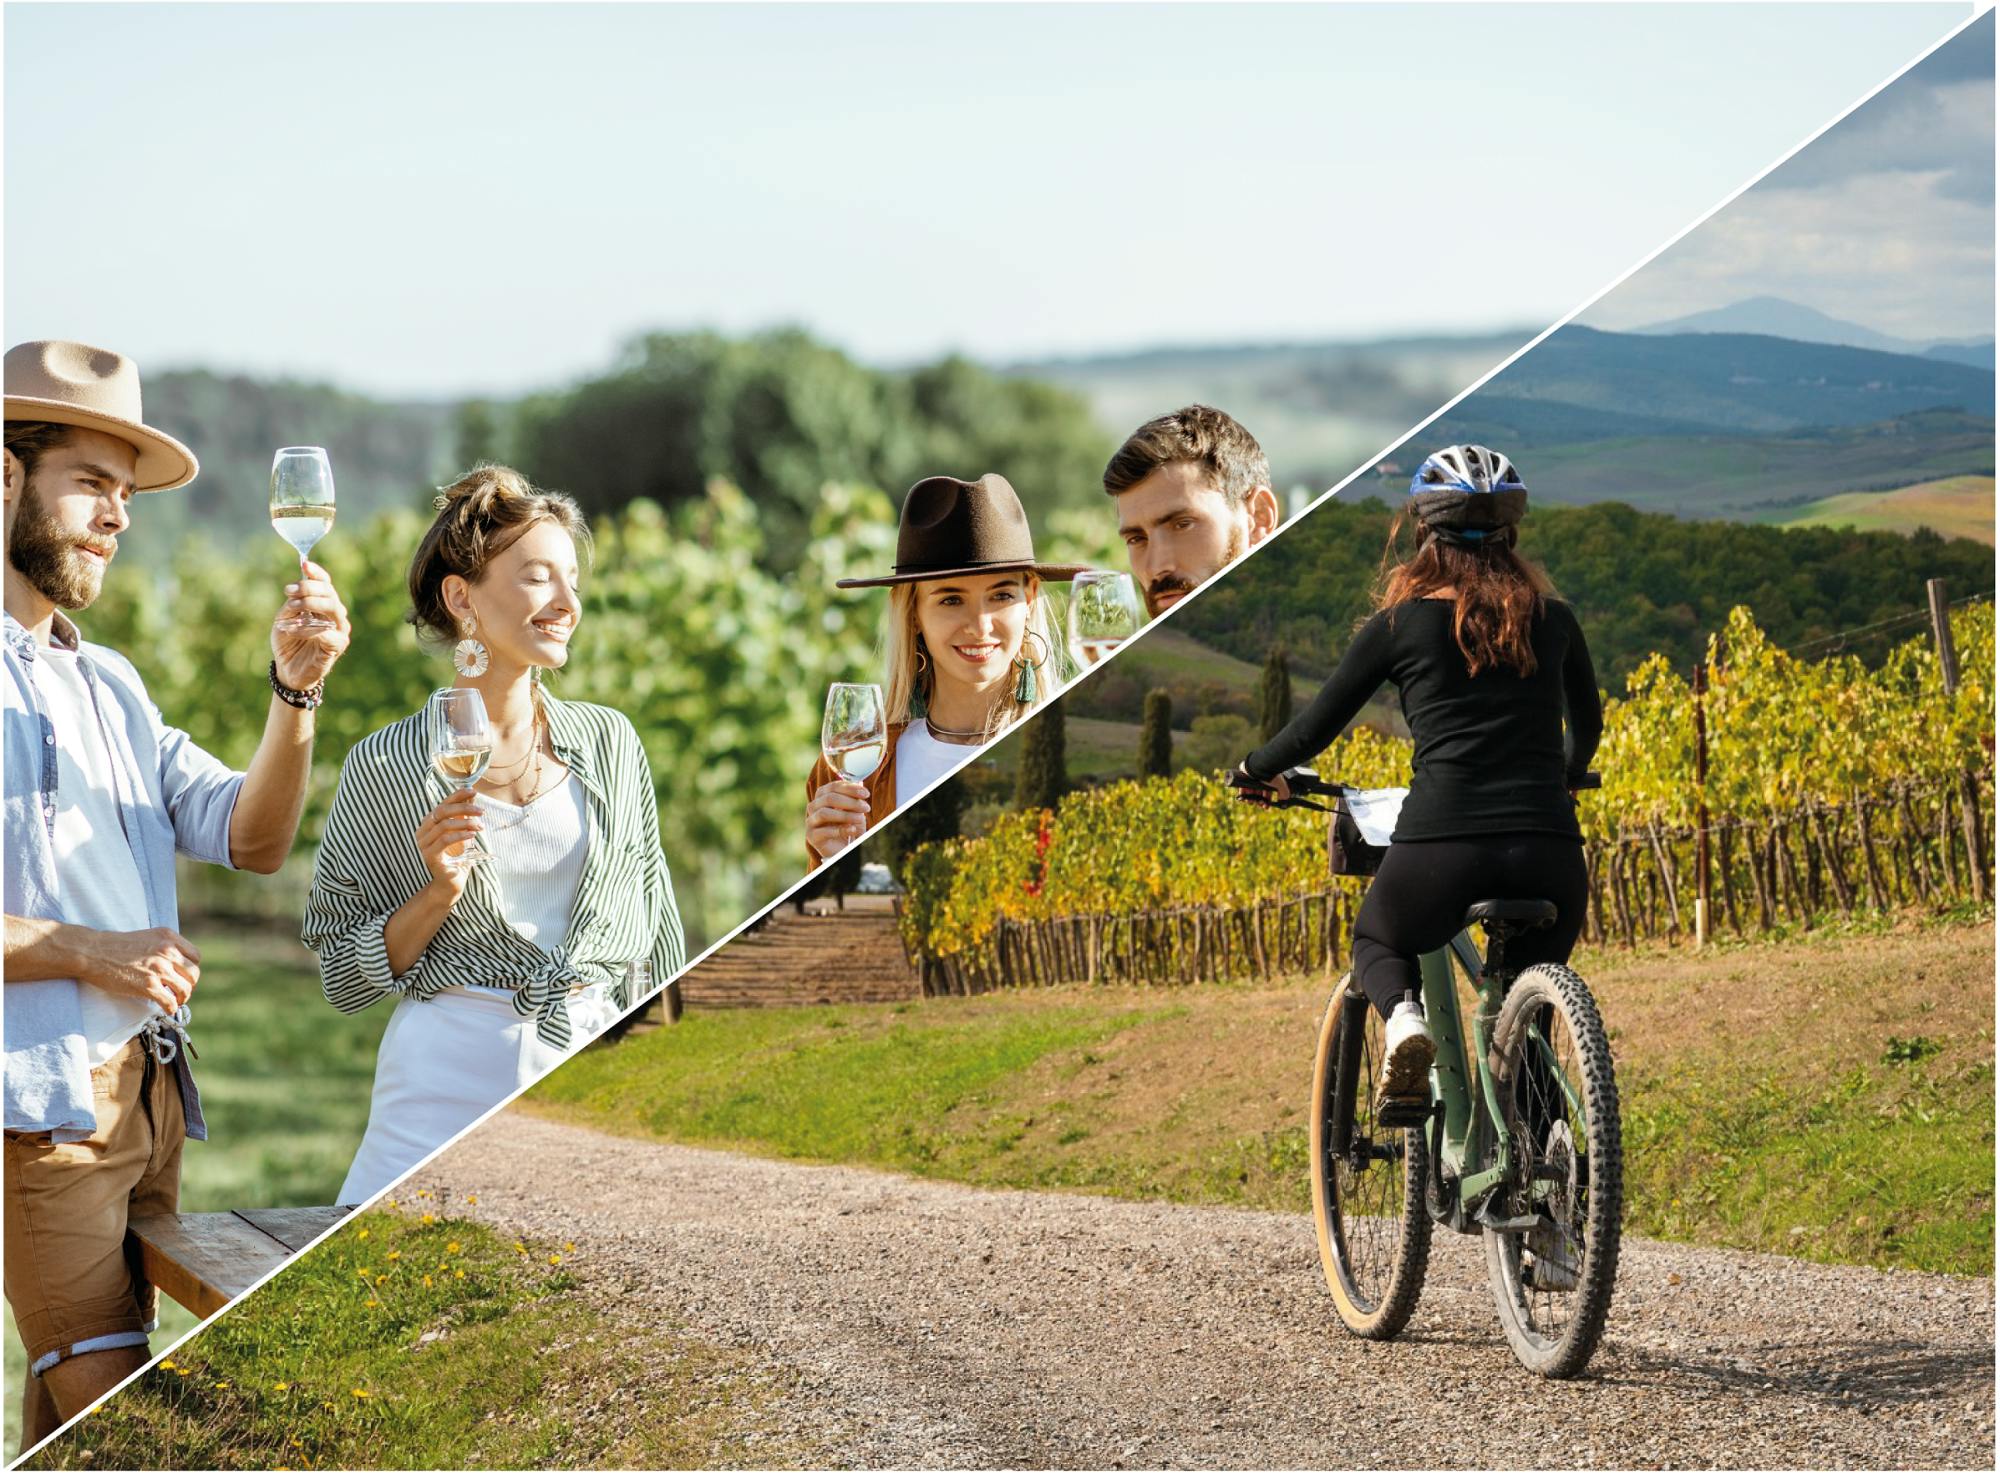 Descubriendo el Chianti e-bike tour y degustación de vinos.